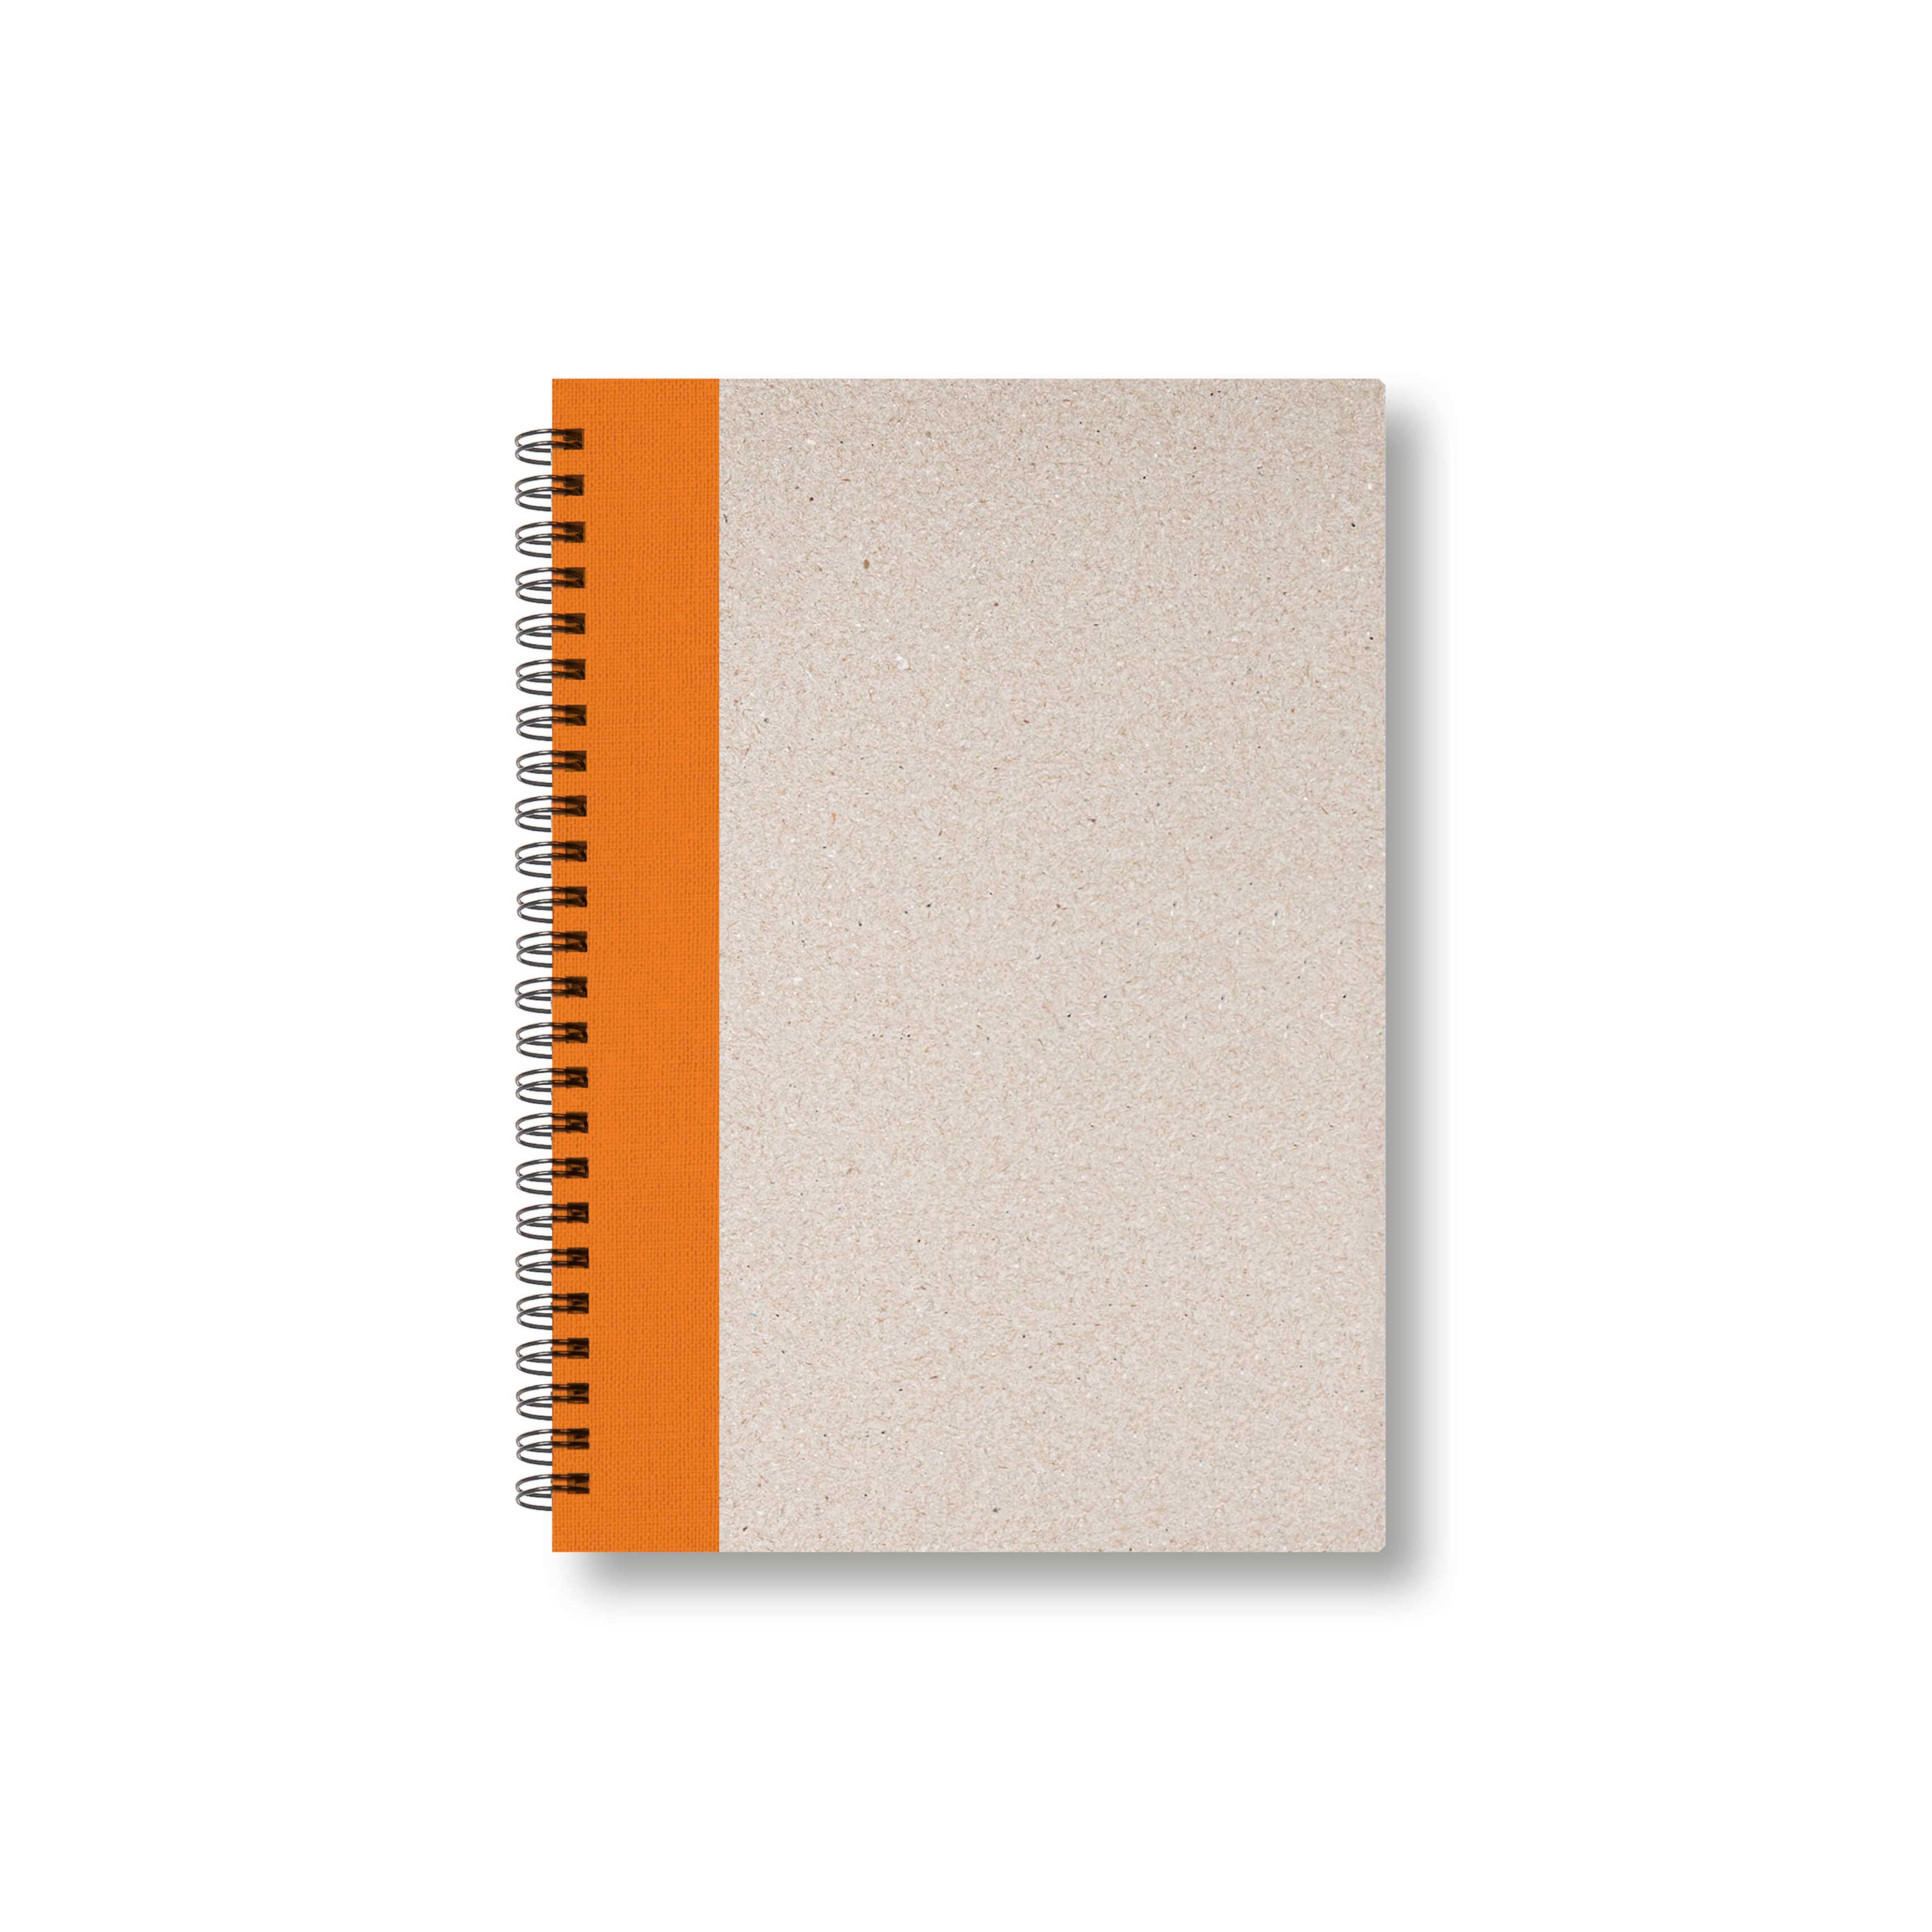 BOBO Zápisník, B6, čistý, oranžový, konfiguruj si obálku